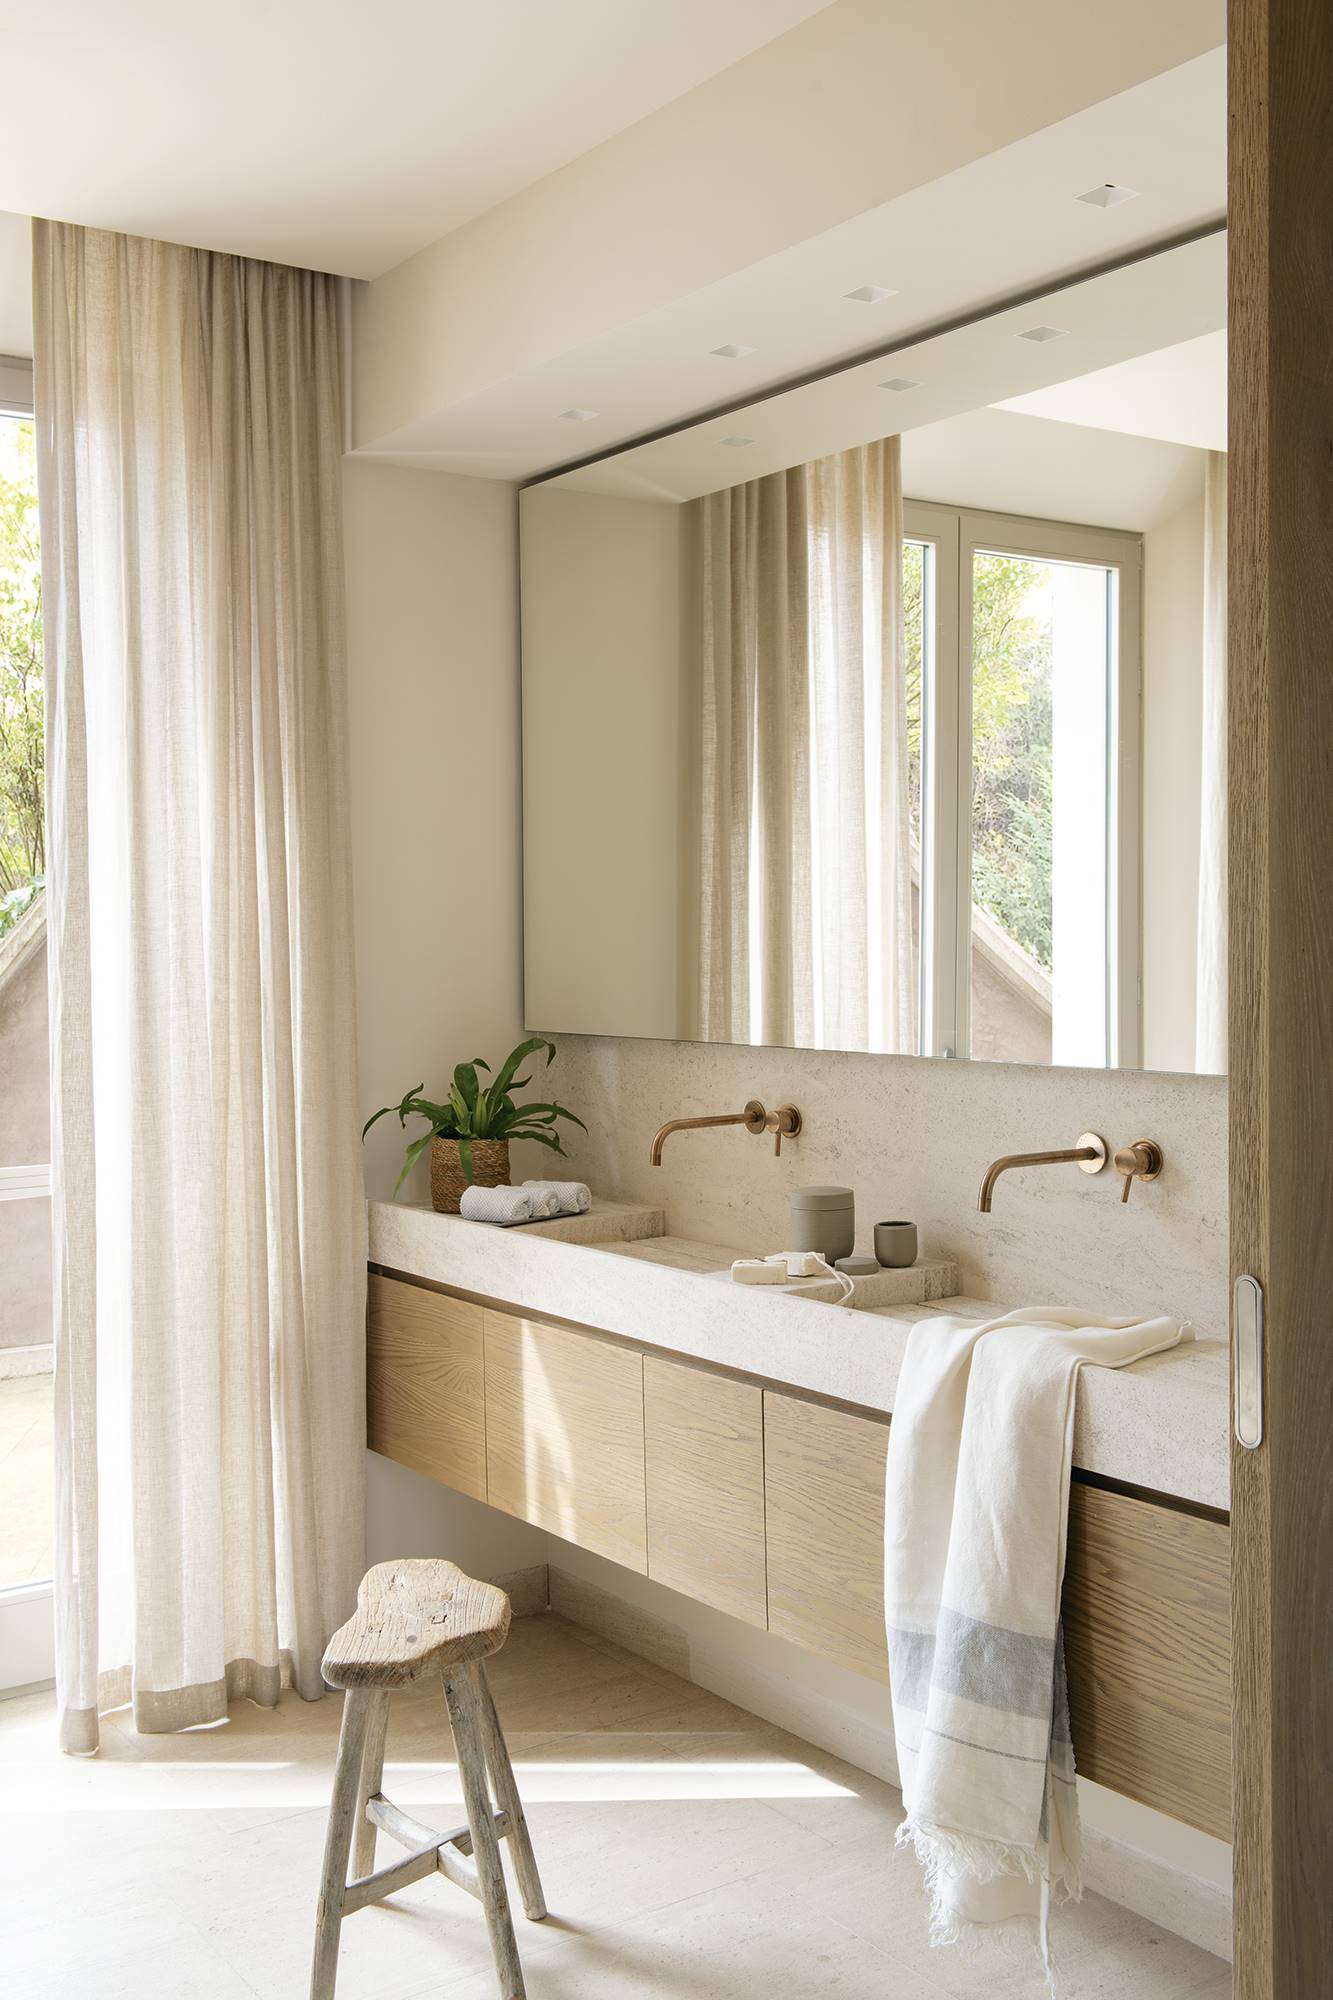 Baño con mueble flotante, maxi espejo y banco de madera rústico.